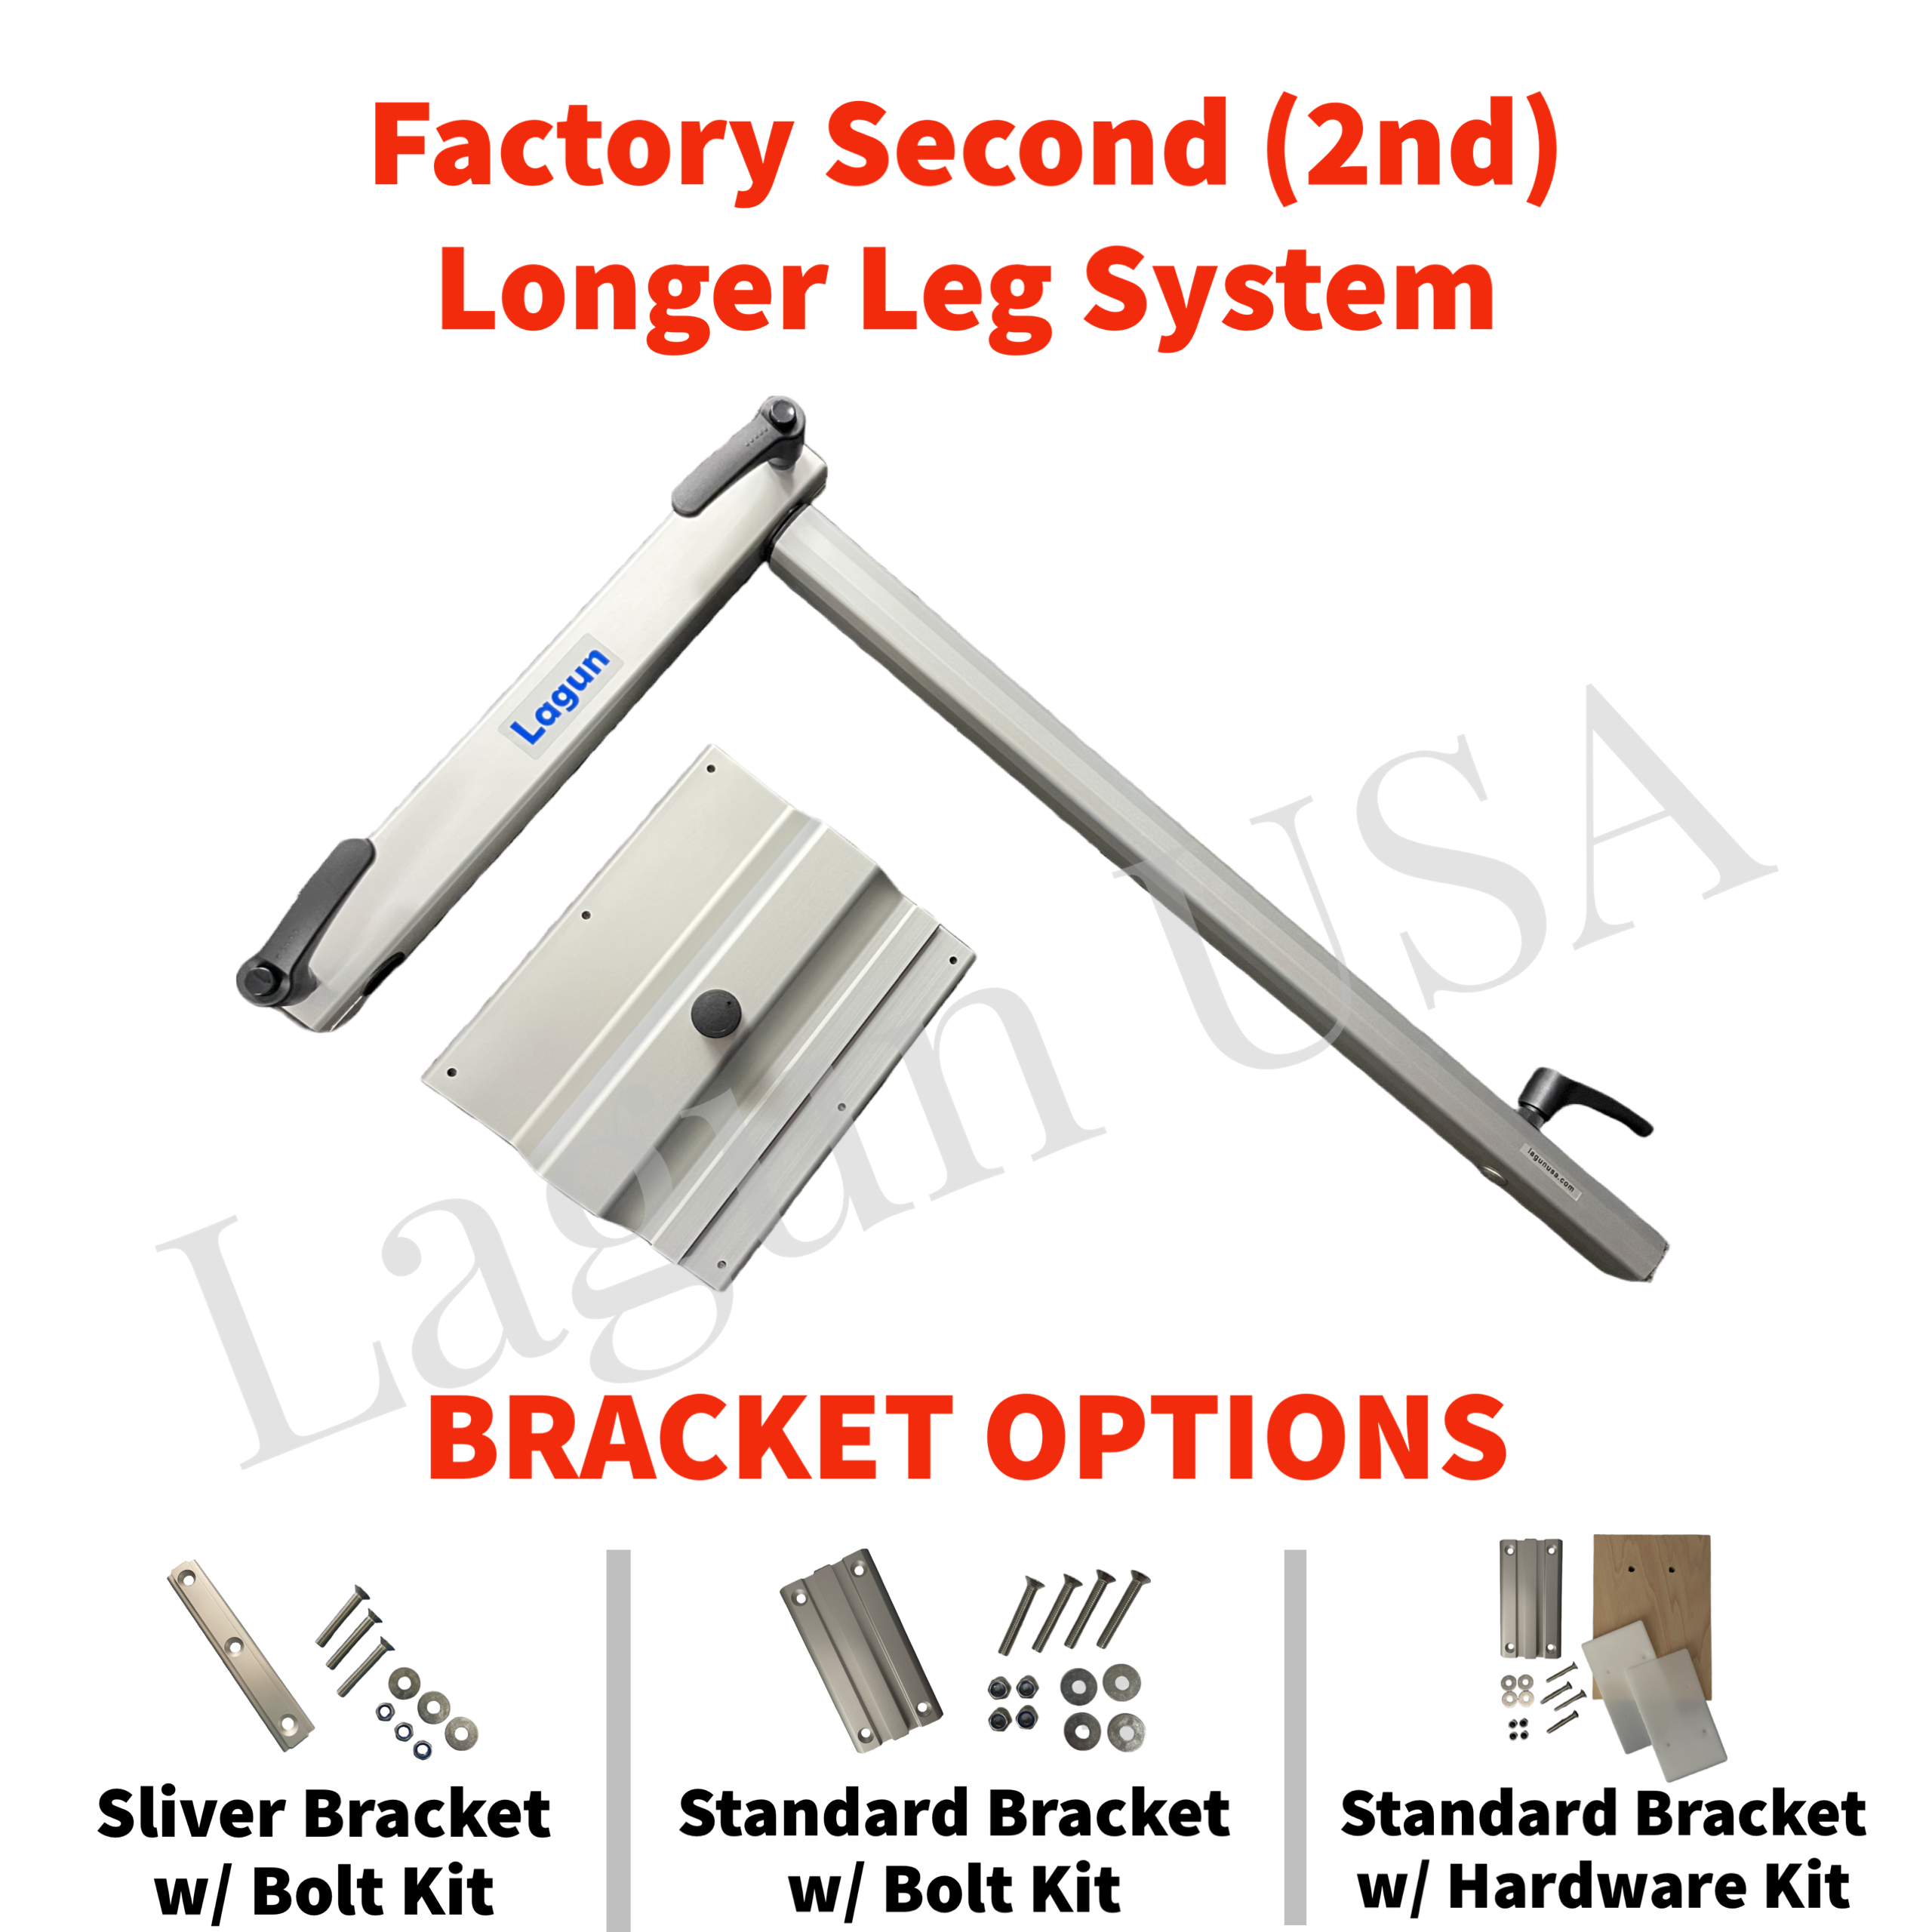 Factory 2nd Longer Leg System